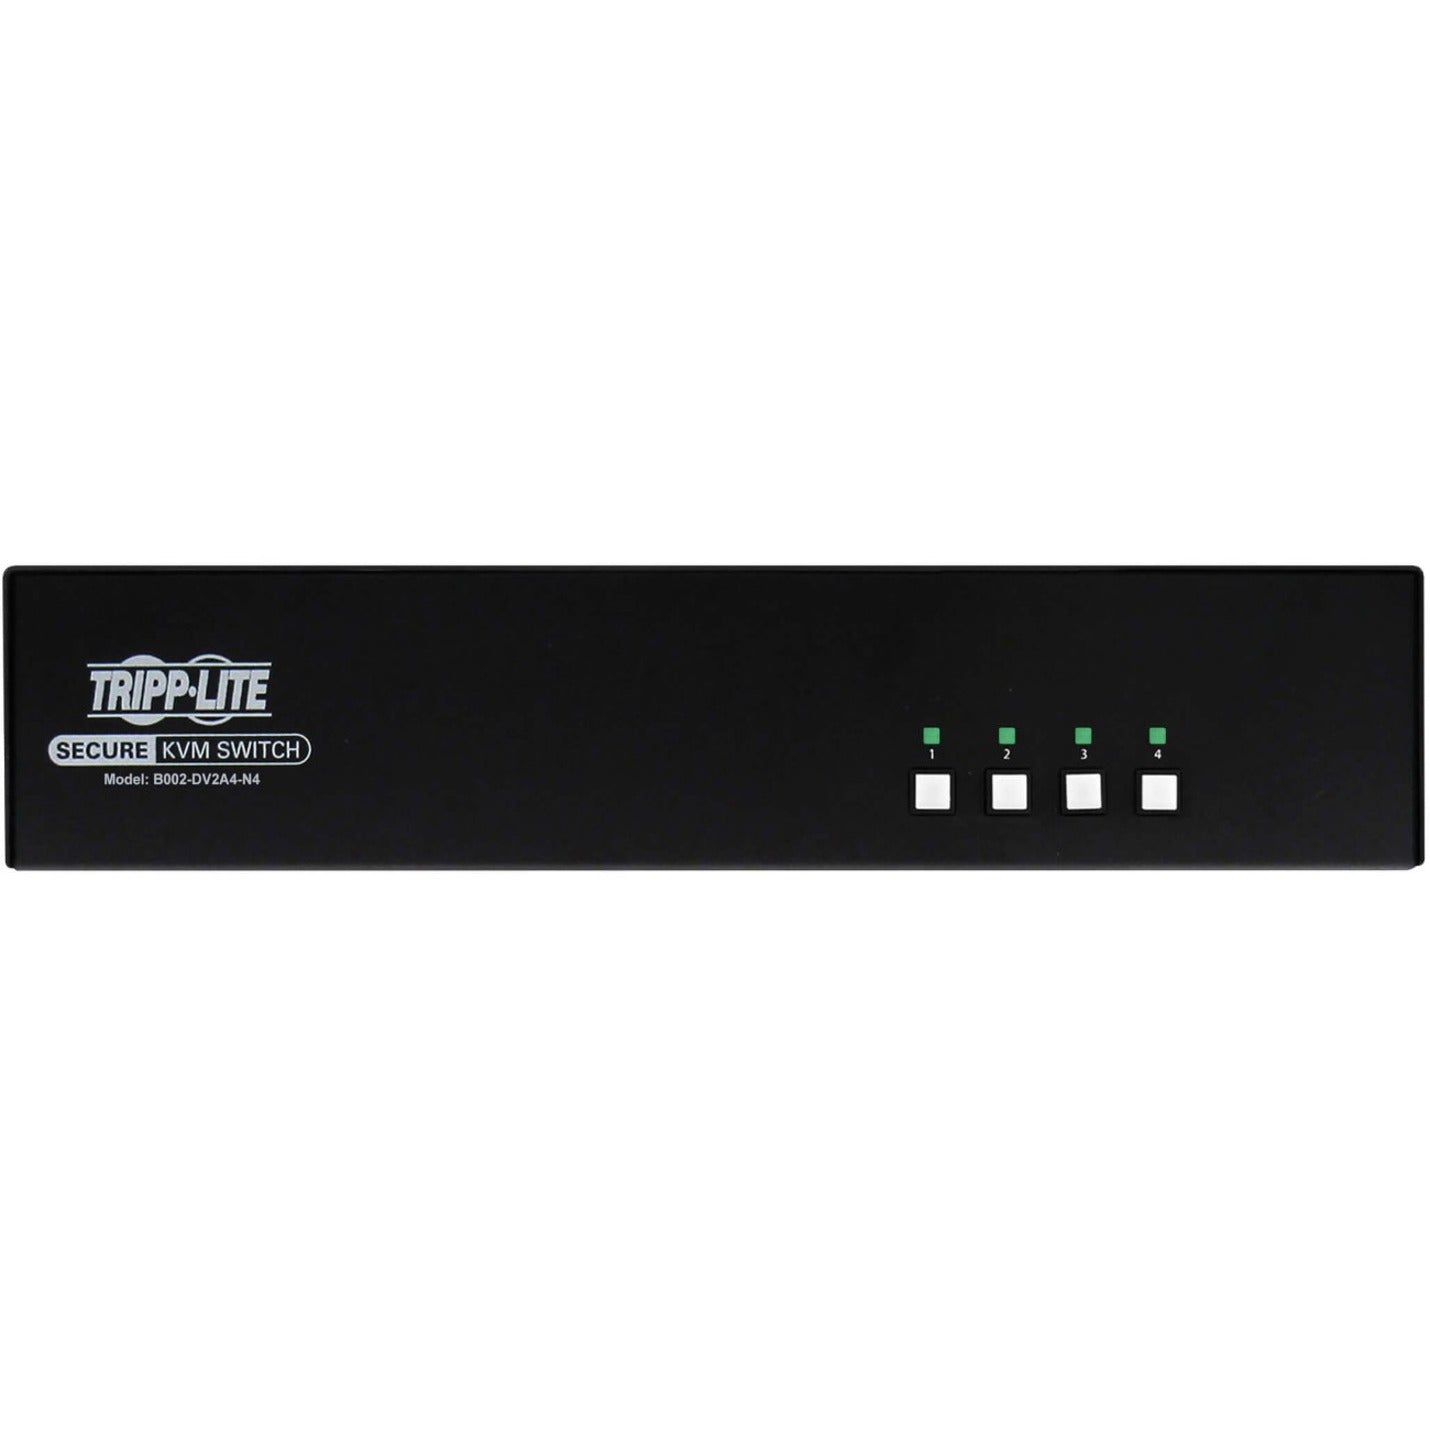 品牌: Tripp Lite Tripp Lite B002-DV2A4-N4 安全KVM切换器 4端口 双头DVI至DVI NIAP PP4.0 TAA，最大视频分辨率2560 x 1600，3年保修